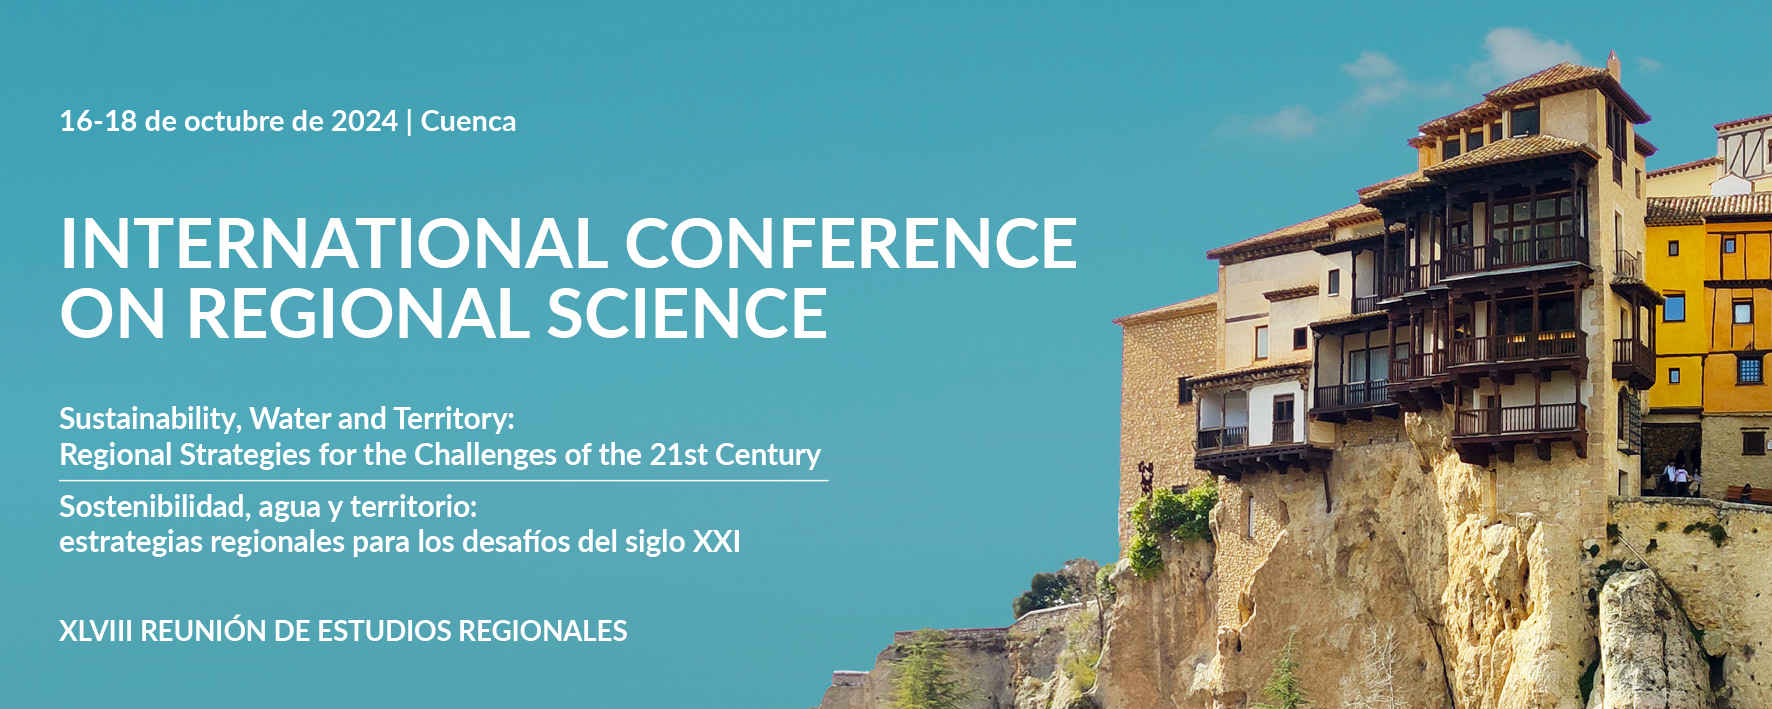 Inscripción abierta a la XLVIII Reunión de Estudios Regionales – Cuenca, 16-18 de octubre de 2024